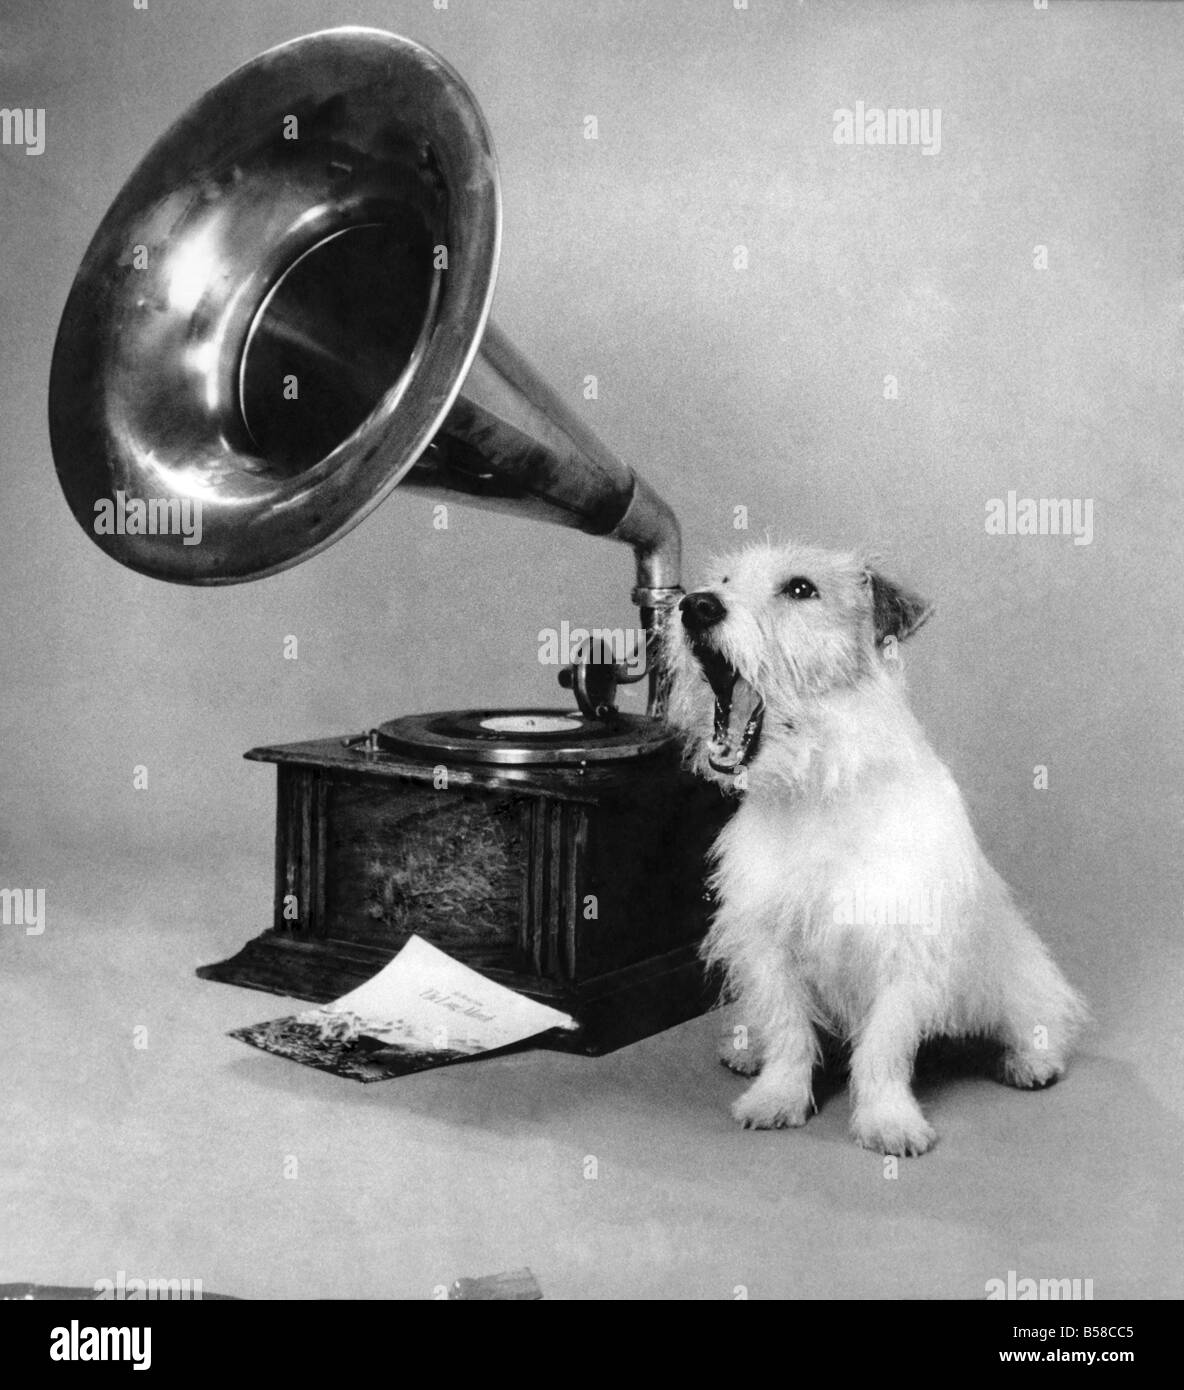 Danny der Jack Russel Terrier hofft, dass die neue Single "Heulende Erfolg" und nur um zu zeigen, wie eingängige es er sogar versucht, Worte zur Musik setzen. Dezember 1988 P006493 Stockfoto